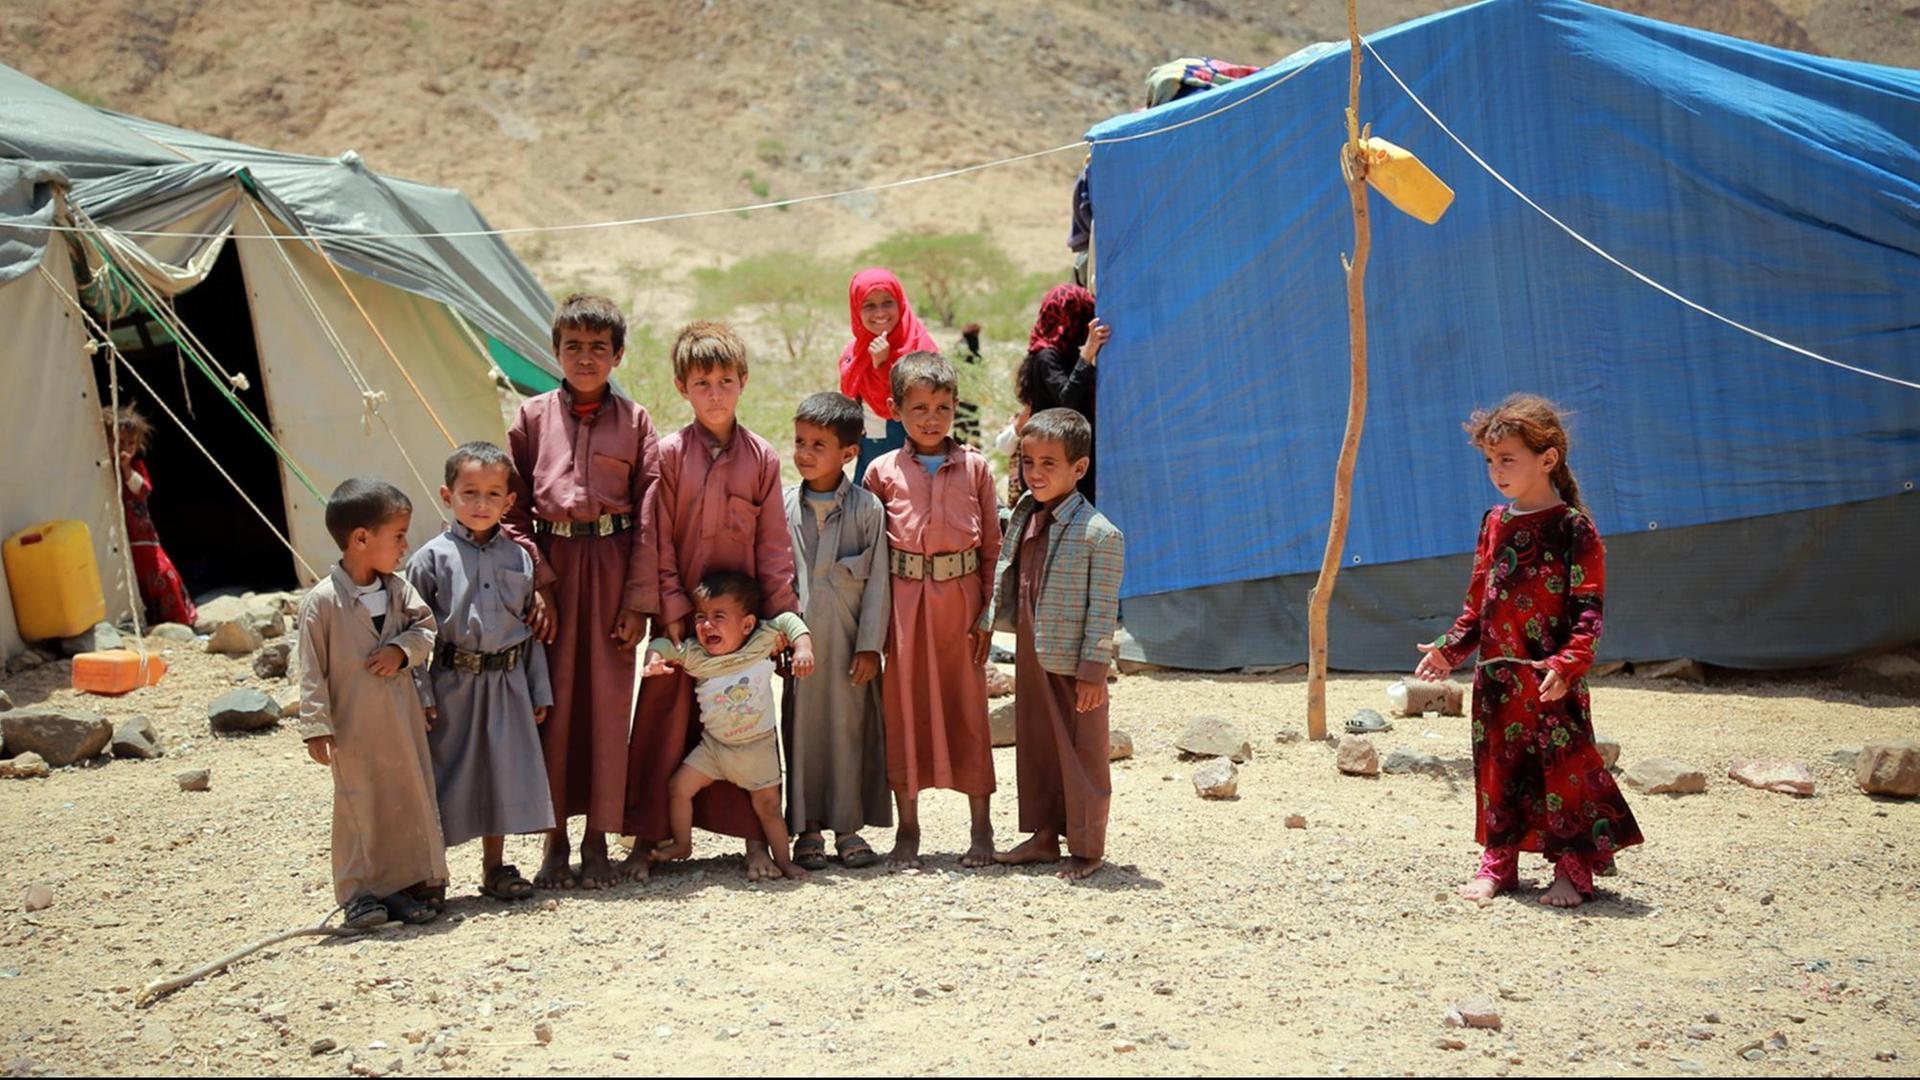 Kinder aus dem Jemen stehen in einem provisorischen Lager für Binnenflüchtlinge neben einem Zelt, nachdem sie ihre Heimatregion Nehm verlassen mussten.